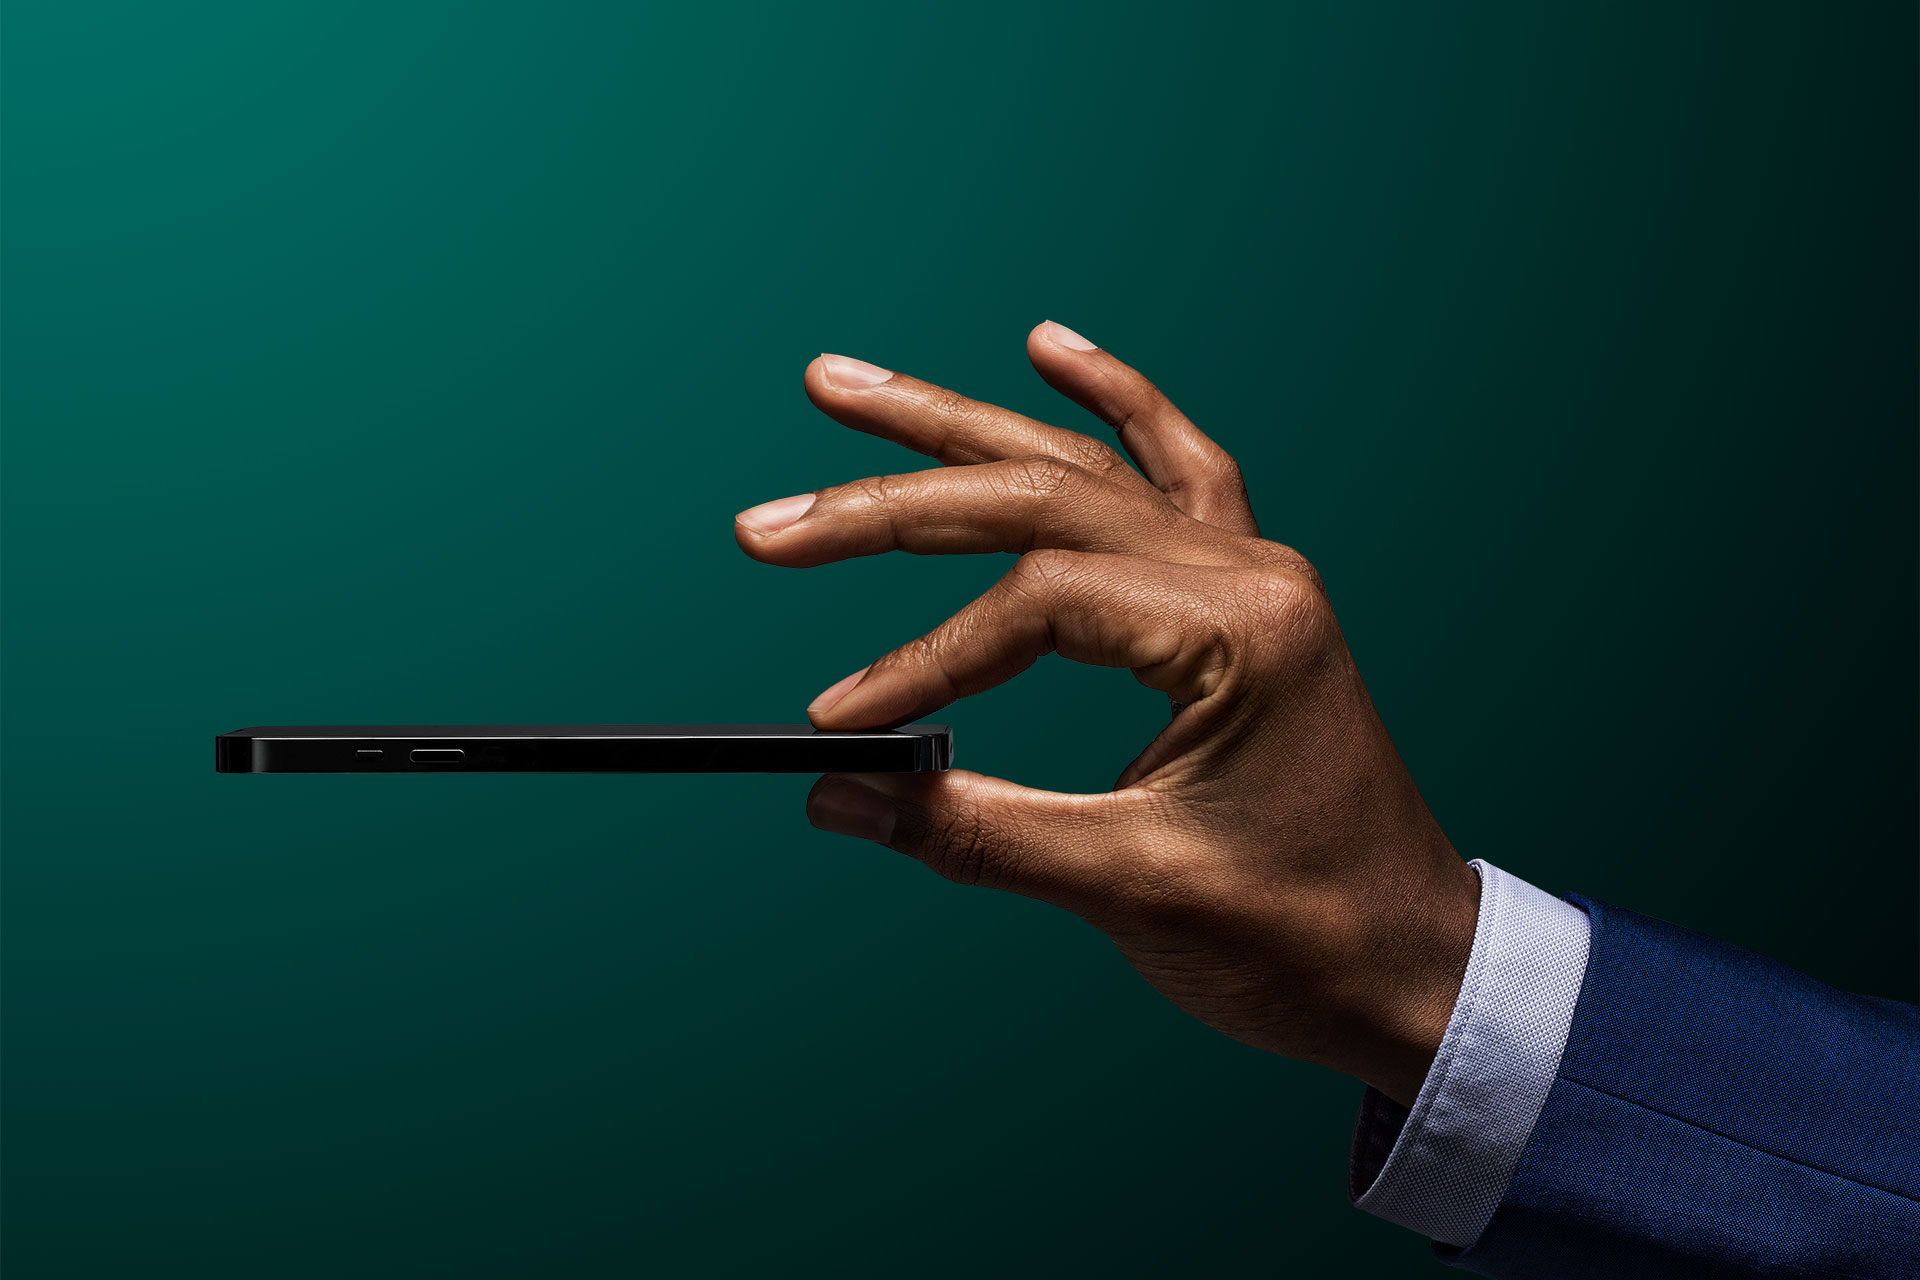 Ein Geschäftsmann hält sein Mobiltelefon vor einem dunkelgrünen Hintergrund in die Luft und symbolisiert damit die Anlage-App Vontobel Volt.